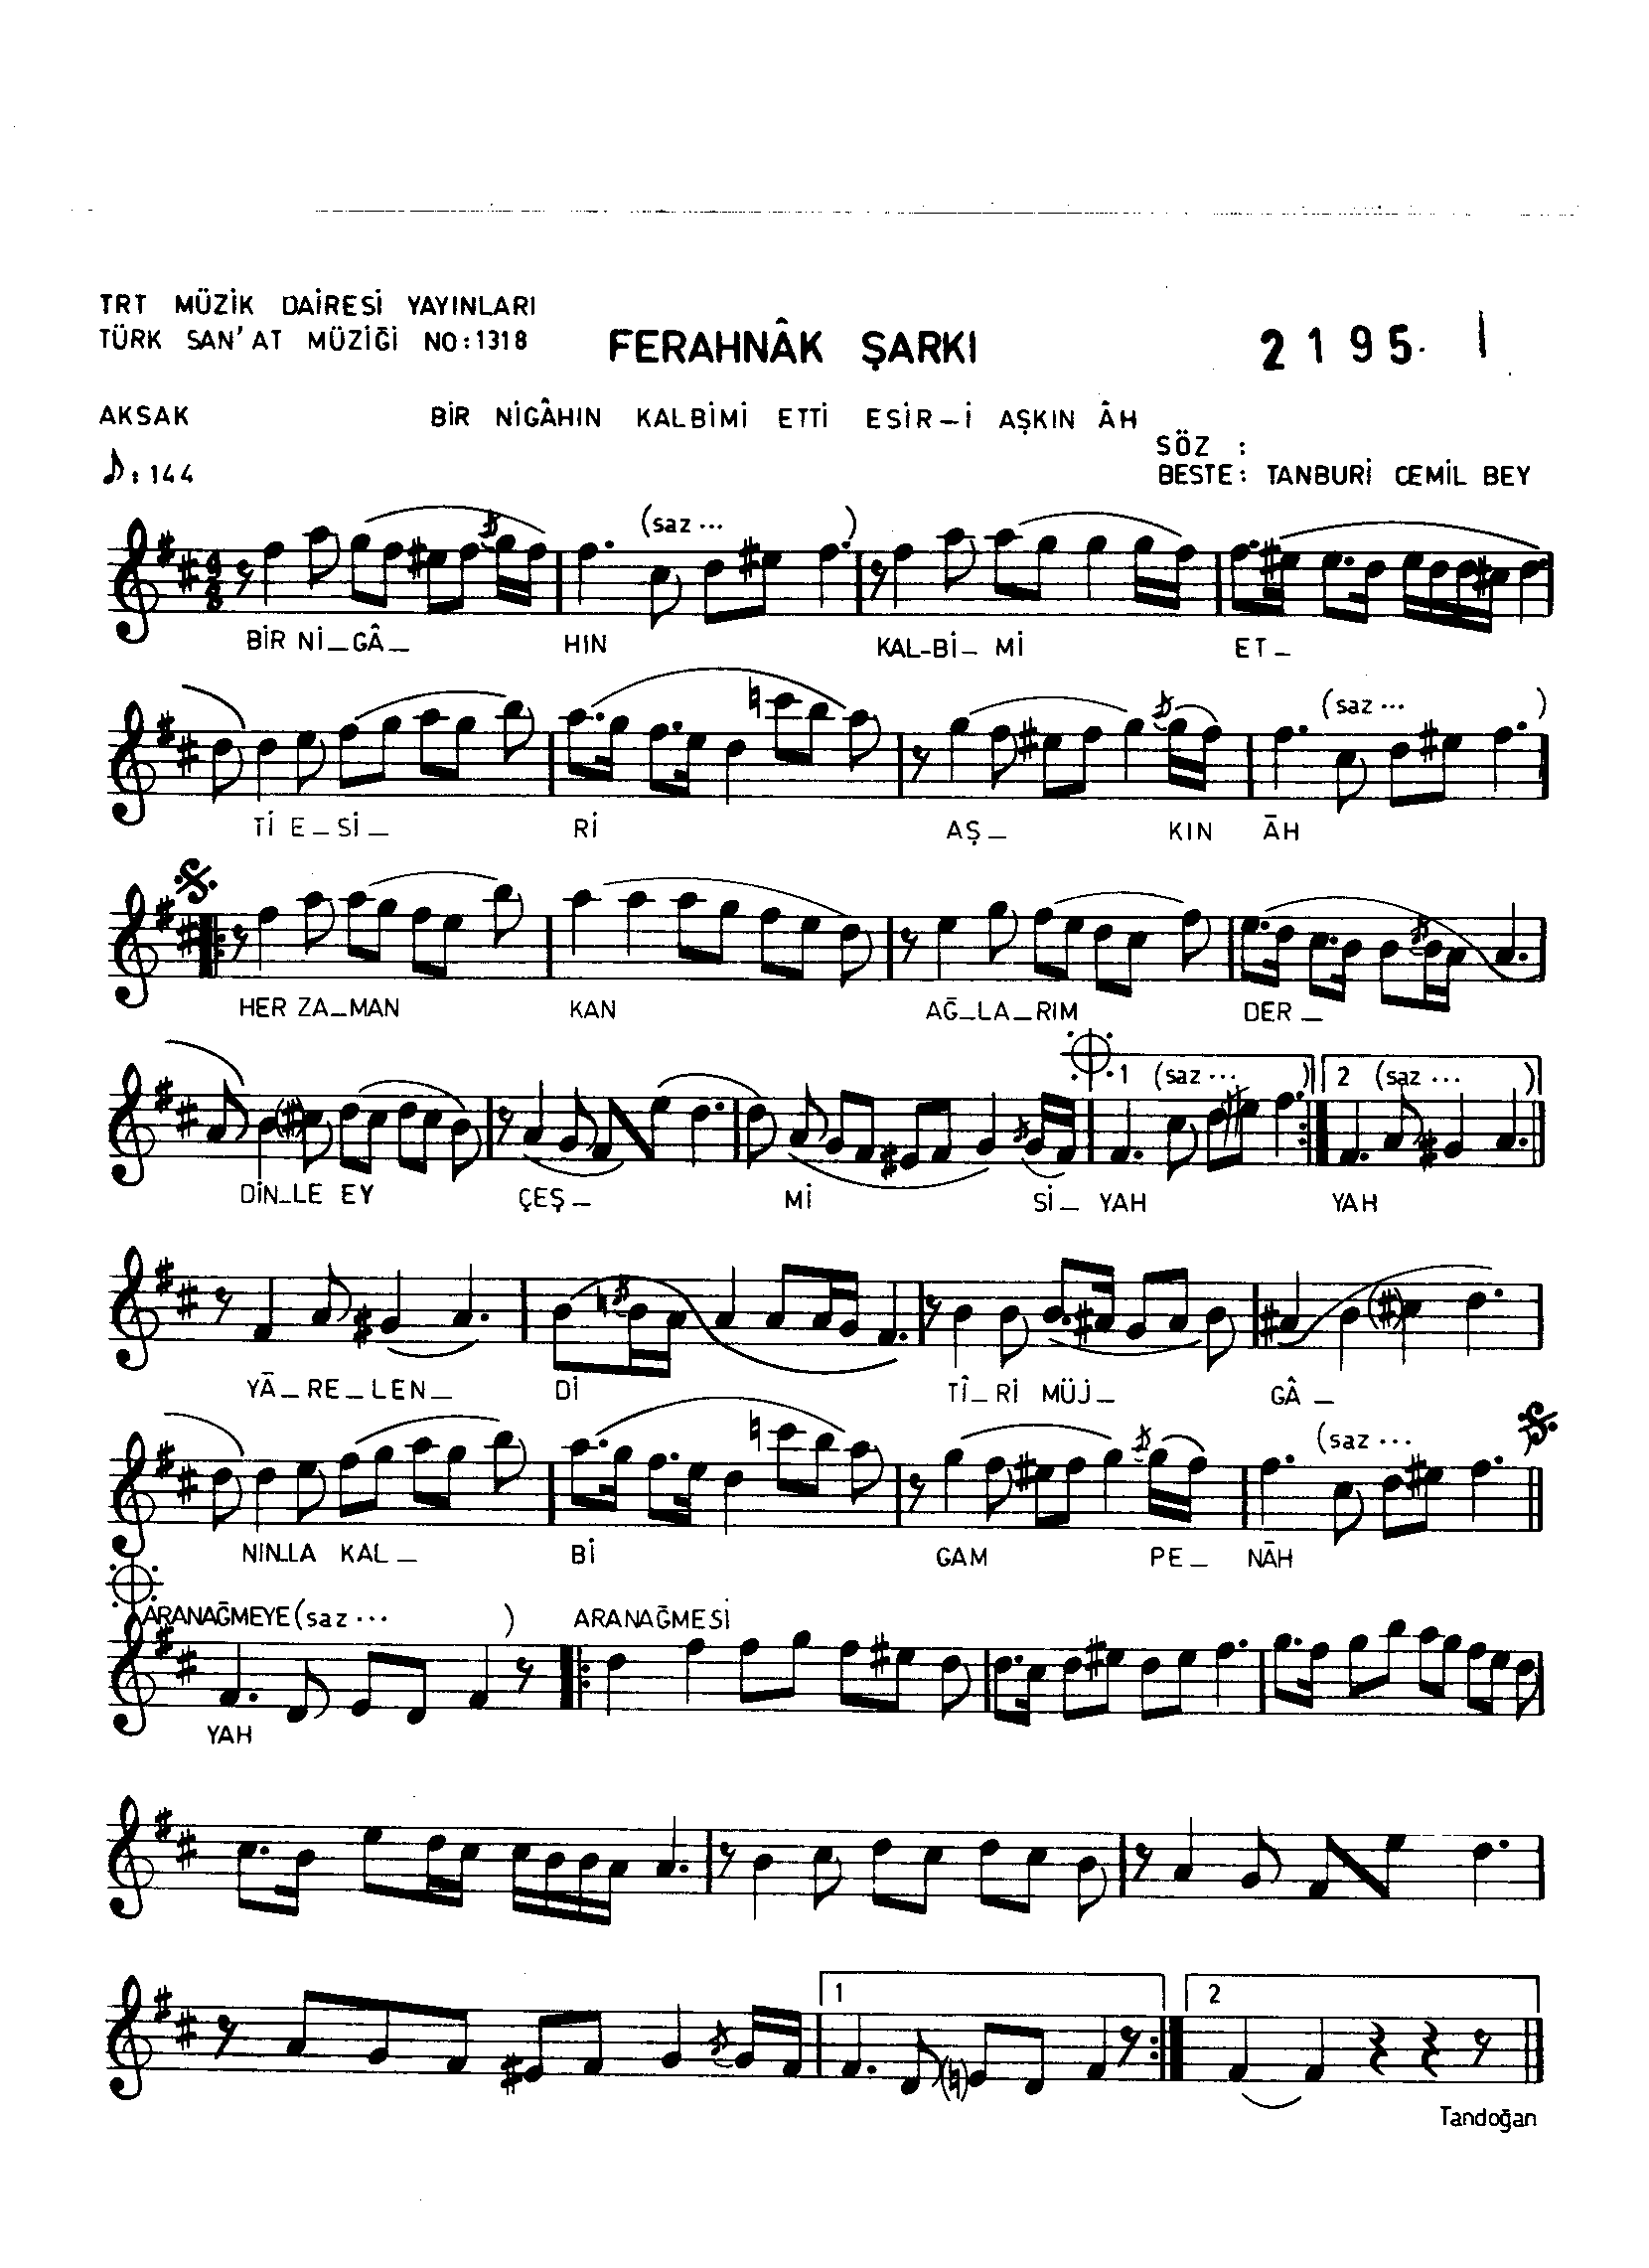 Ferahnâk - Şarkı - Tanburi Cemil Bey - Sayfa 1